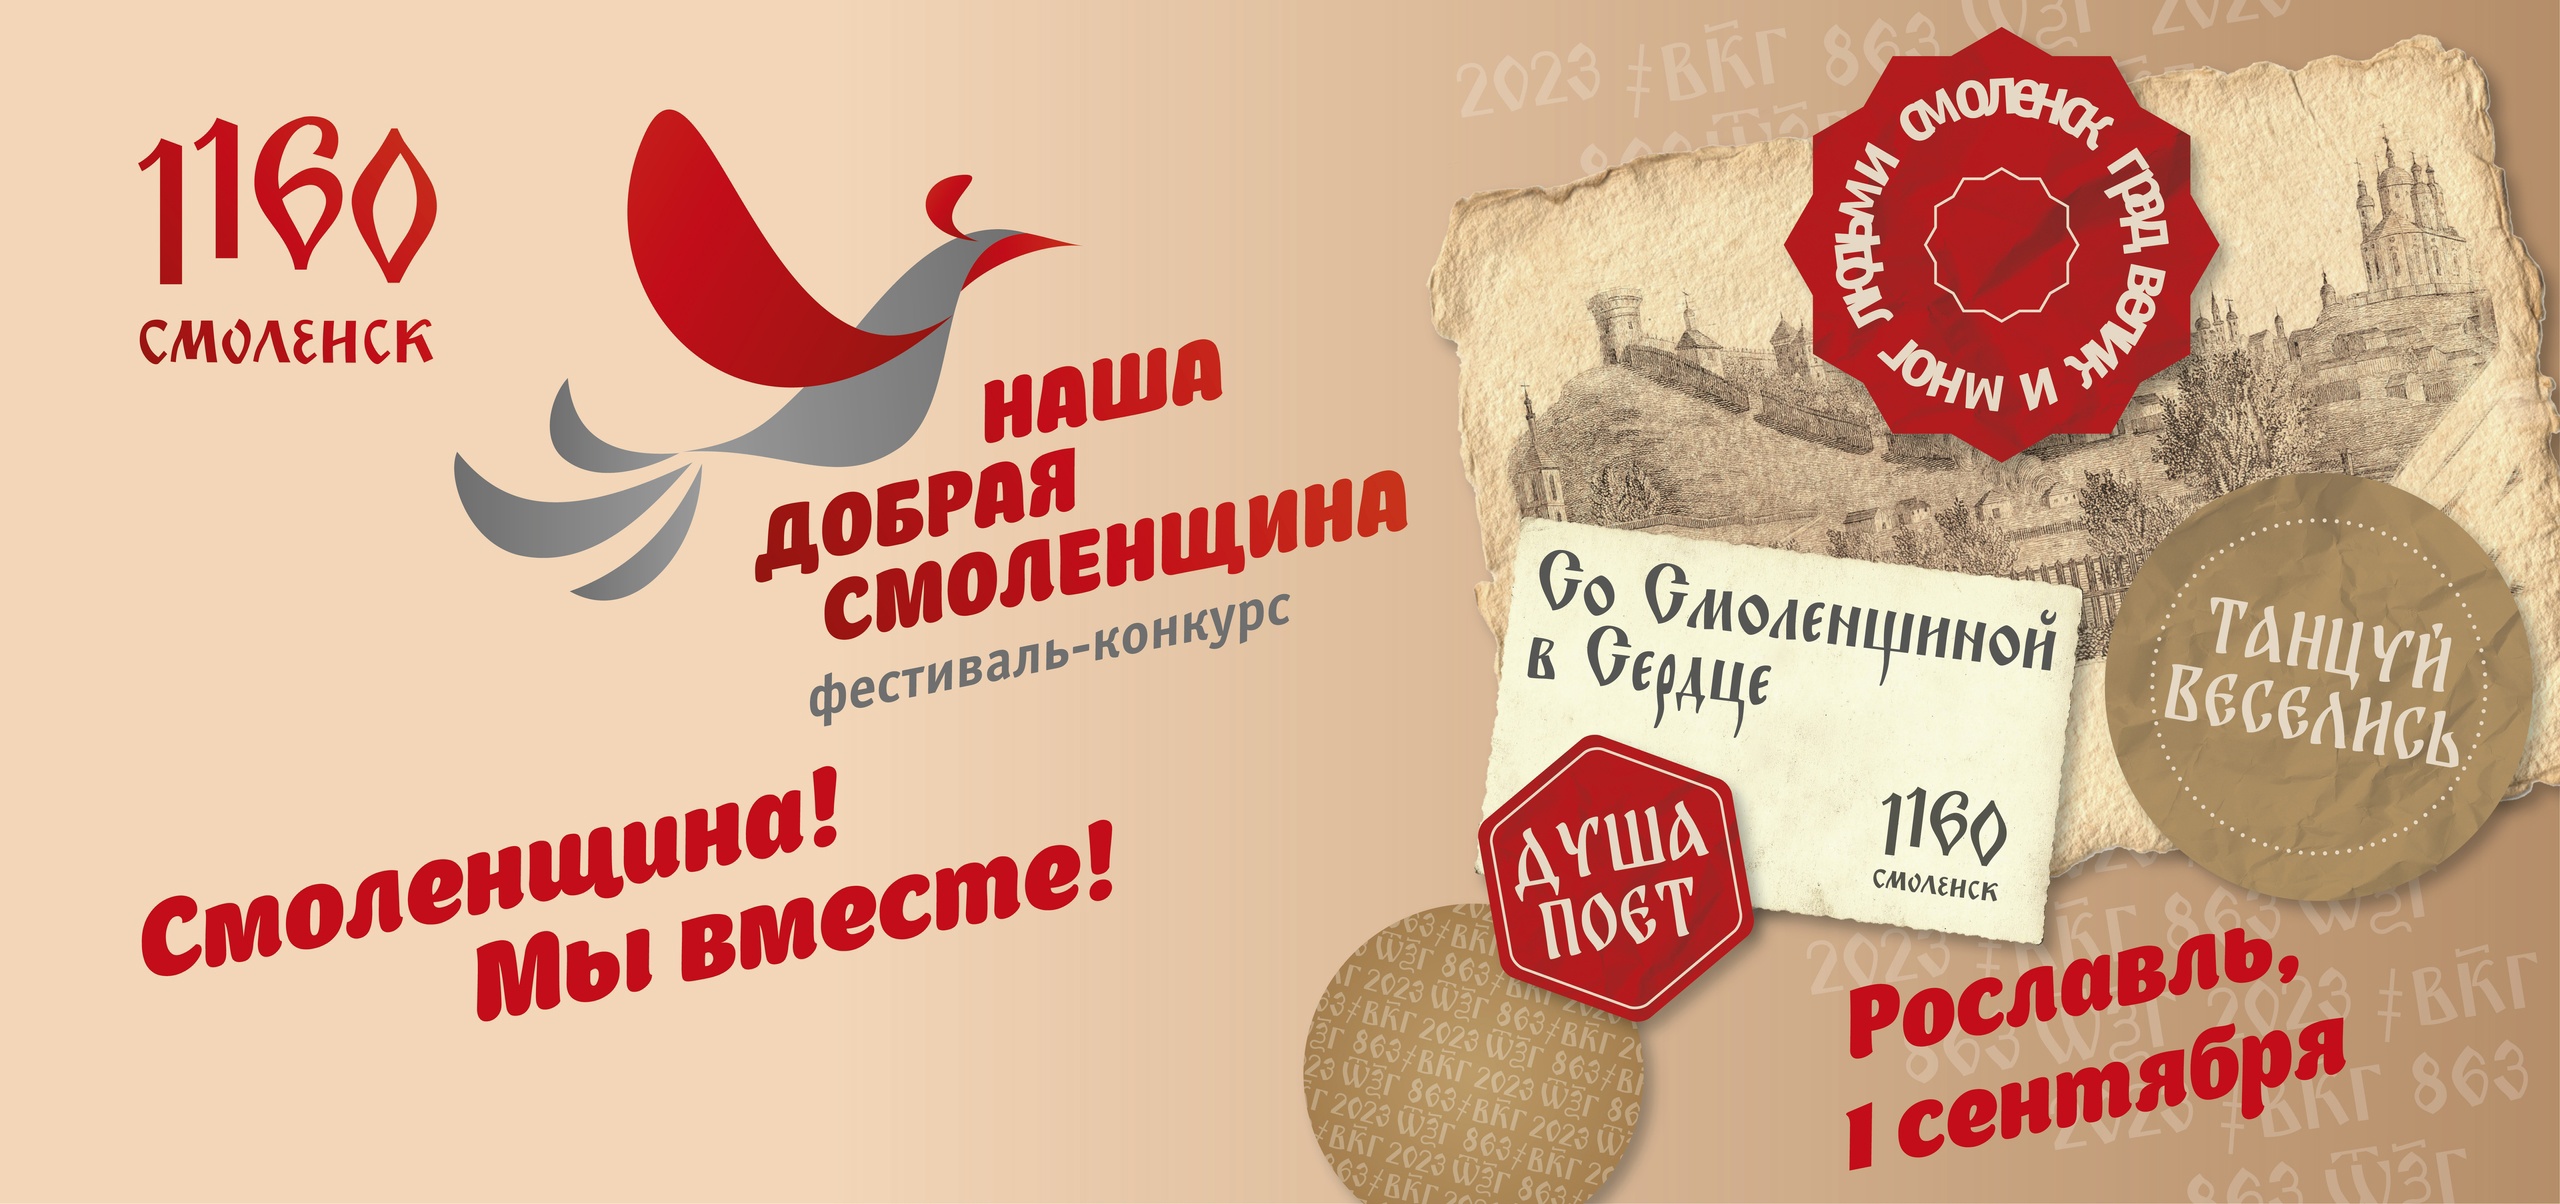 1 сентября в Рославле откроется фестиваль-конкурс «Наша добрая Смоленщина»